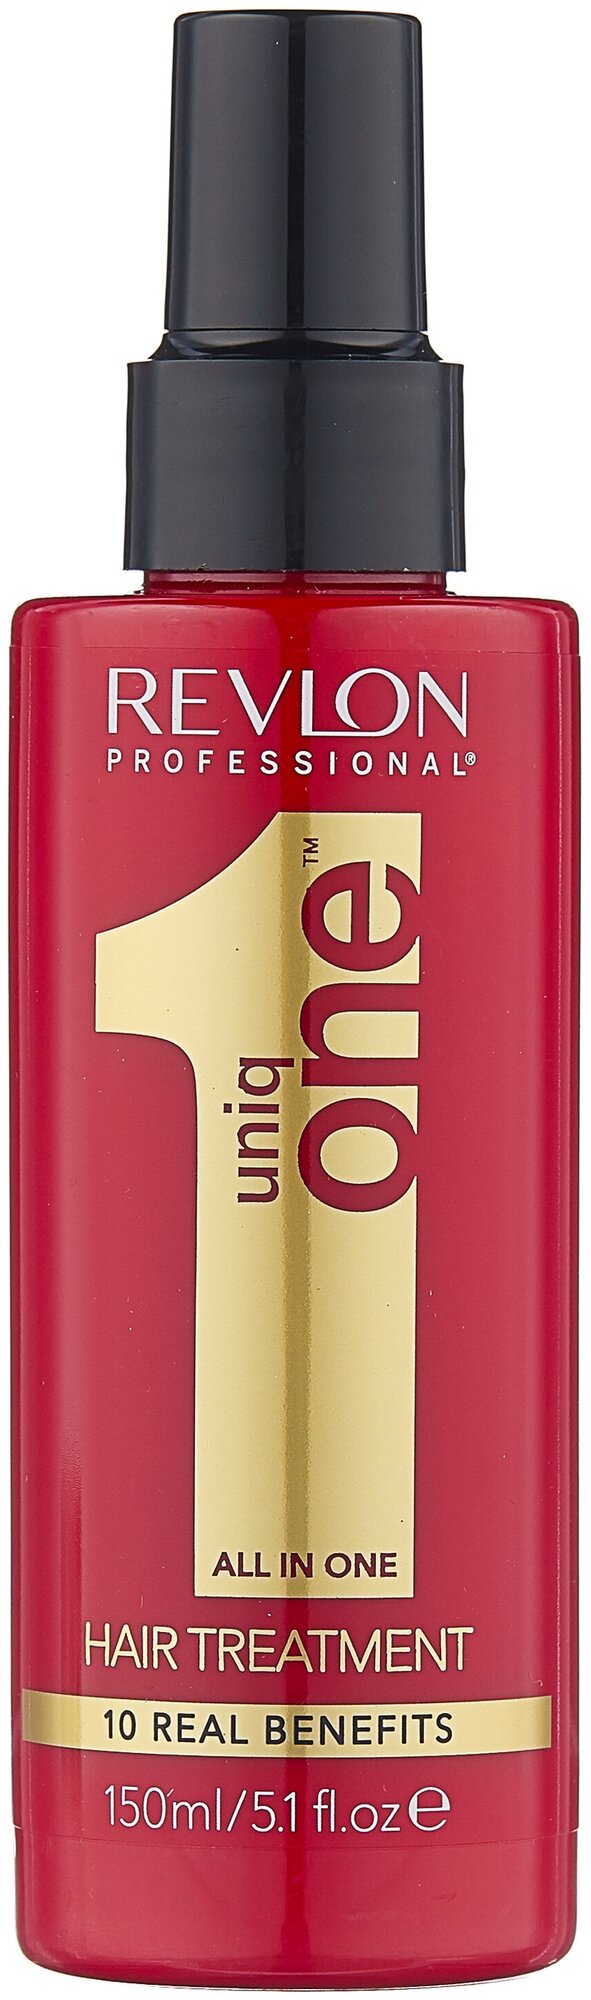 Revlon Professional Uniq One универсальный уход за волосами Classic для волос, 150 мл, спрей